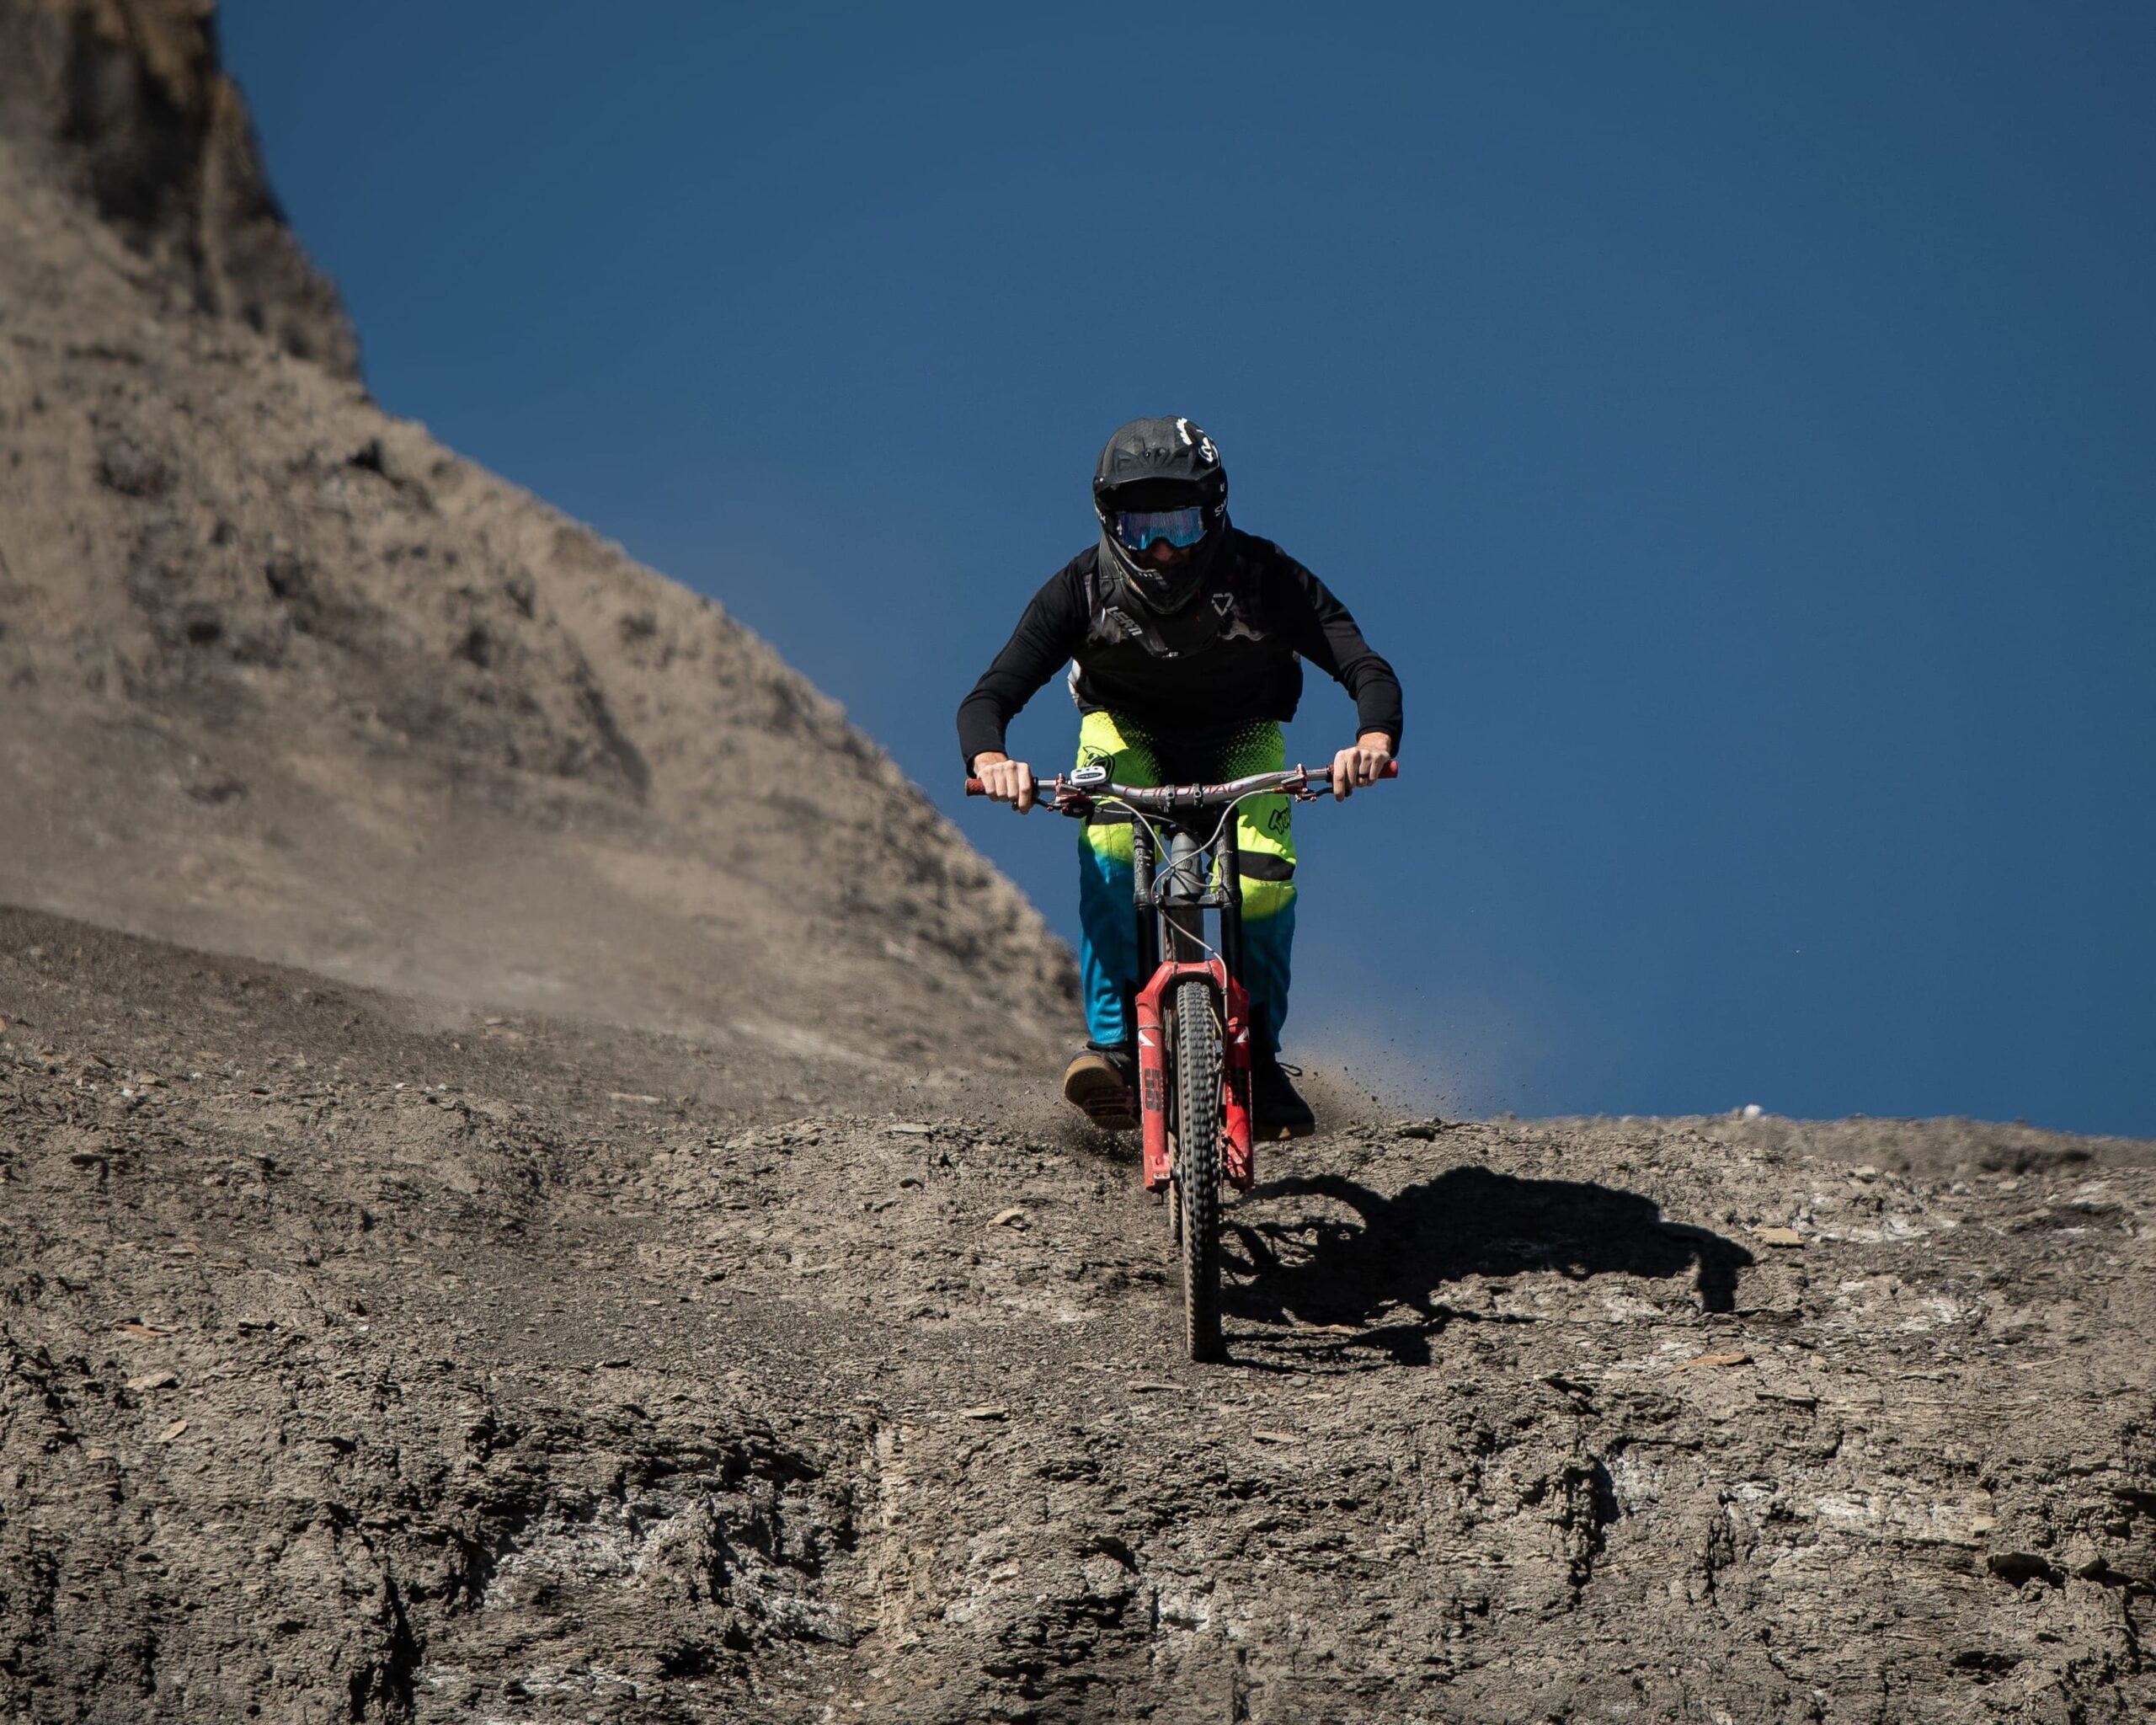 Ciclista de MTB bajando por desierto de piedras oscuras.